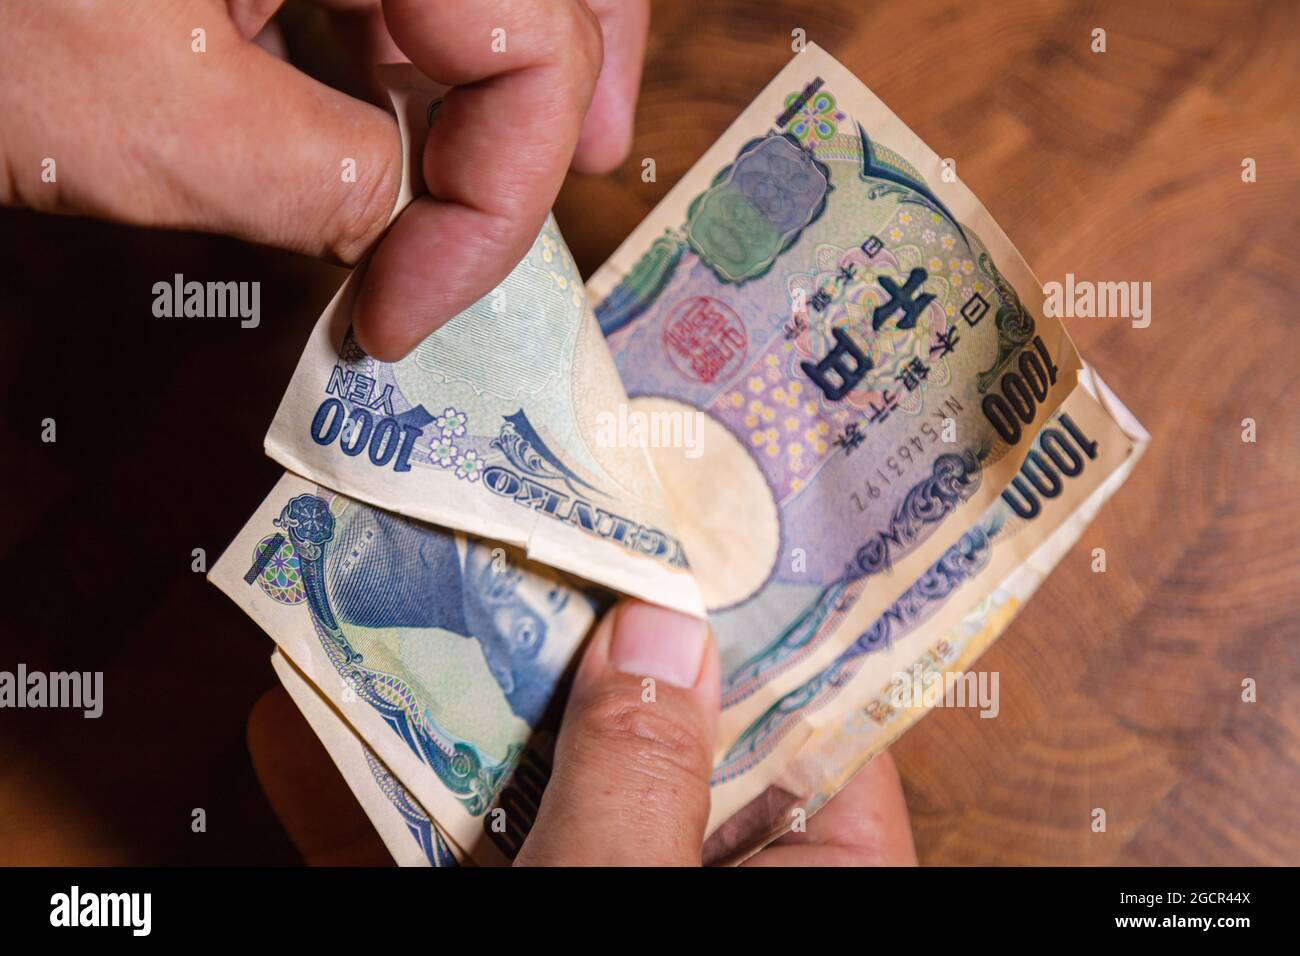 Les mains masculines montrent le yen japonais. Le yen est la monnaie du Japon. Du côté de l'Obverse des billets Hideyo Noguchi, bactériologue du XXe siècle Banque D'Images